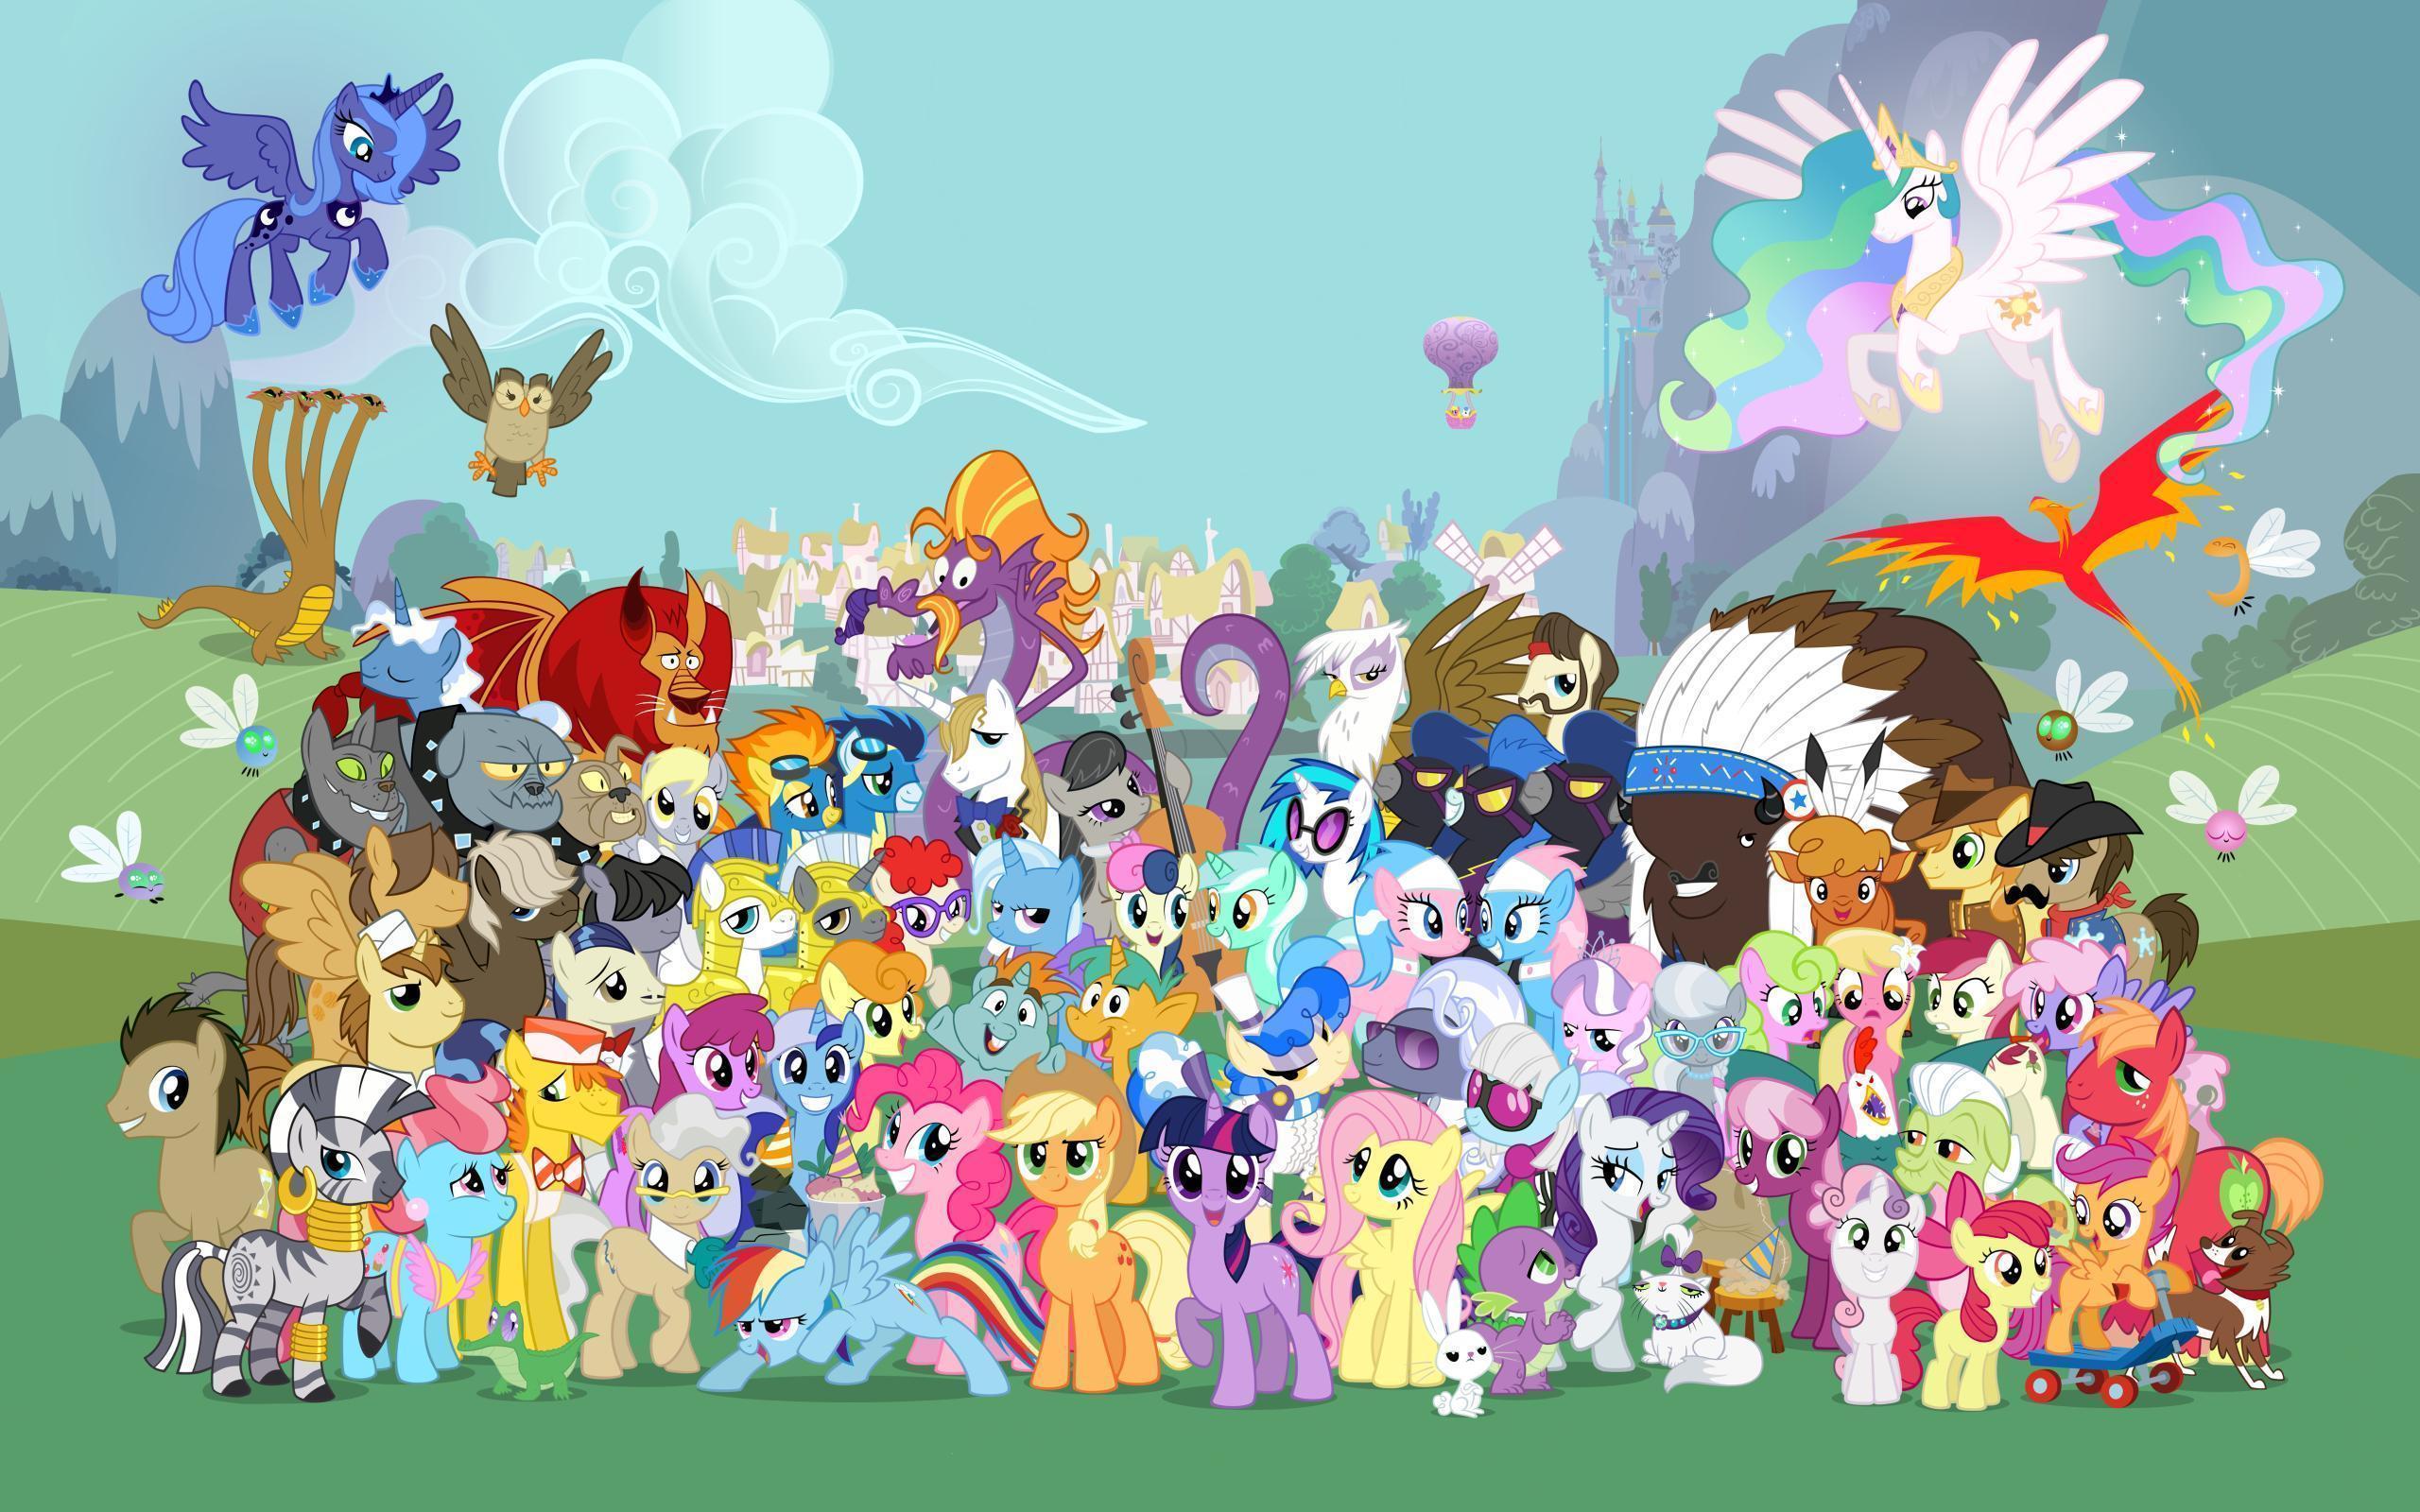 Wallpaper de My little pony: Friendship is Magic!